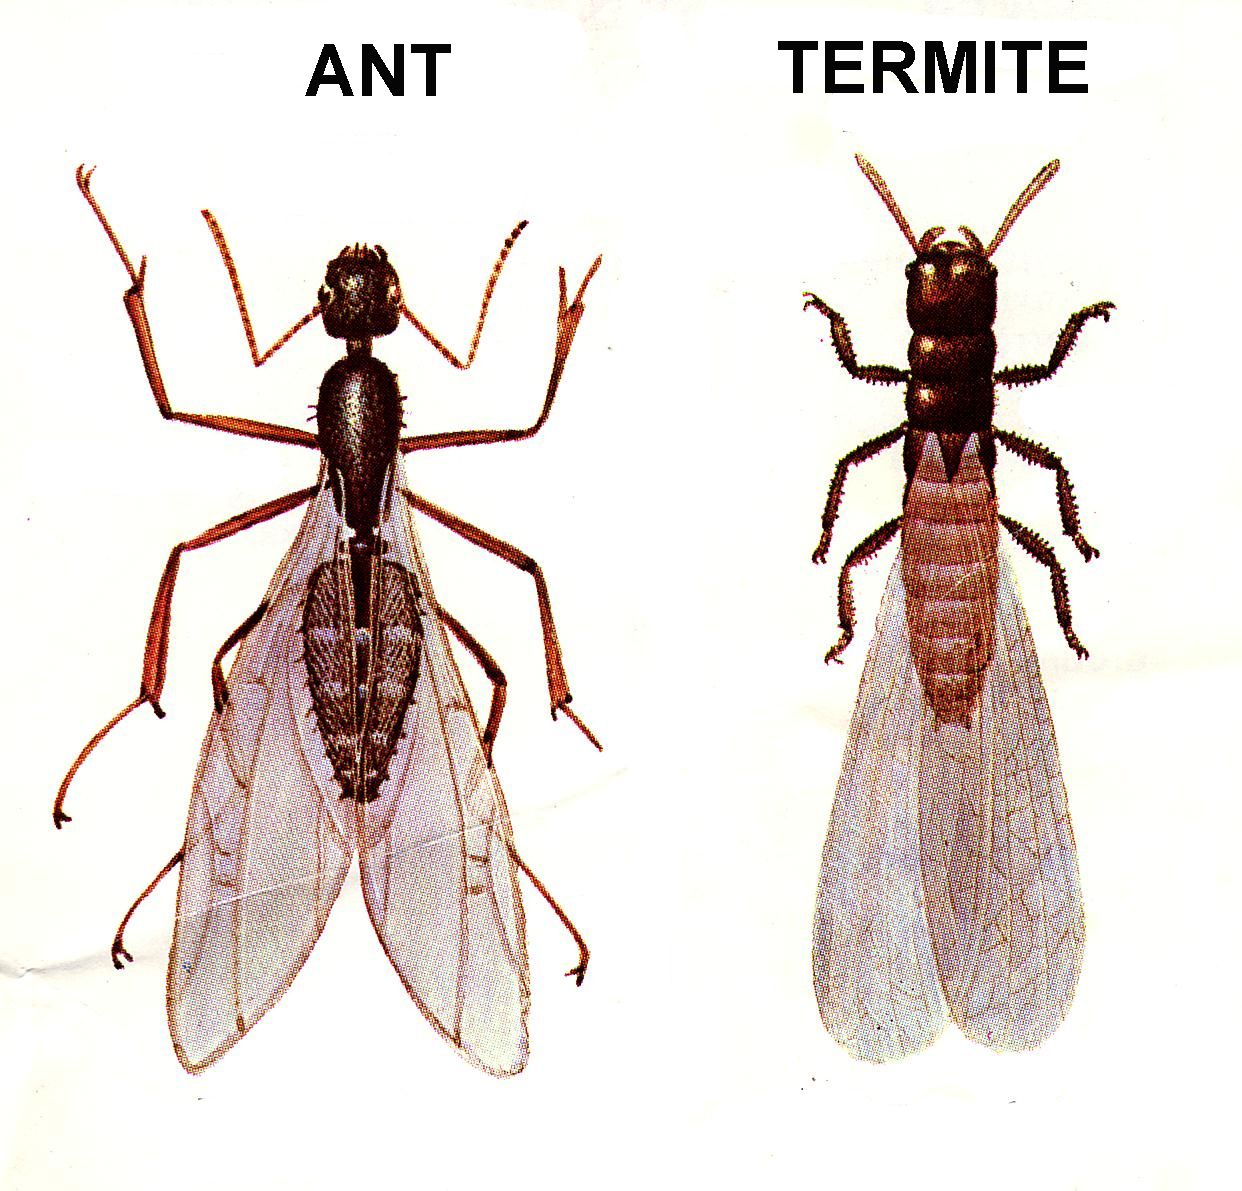 Ant-Termite-Comparison-56a709f35f9b58...